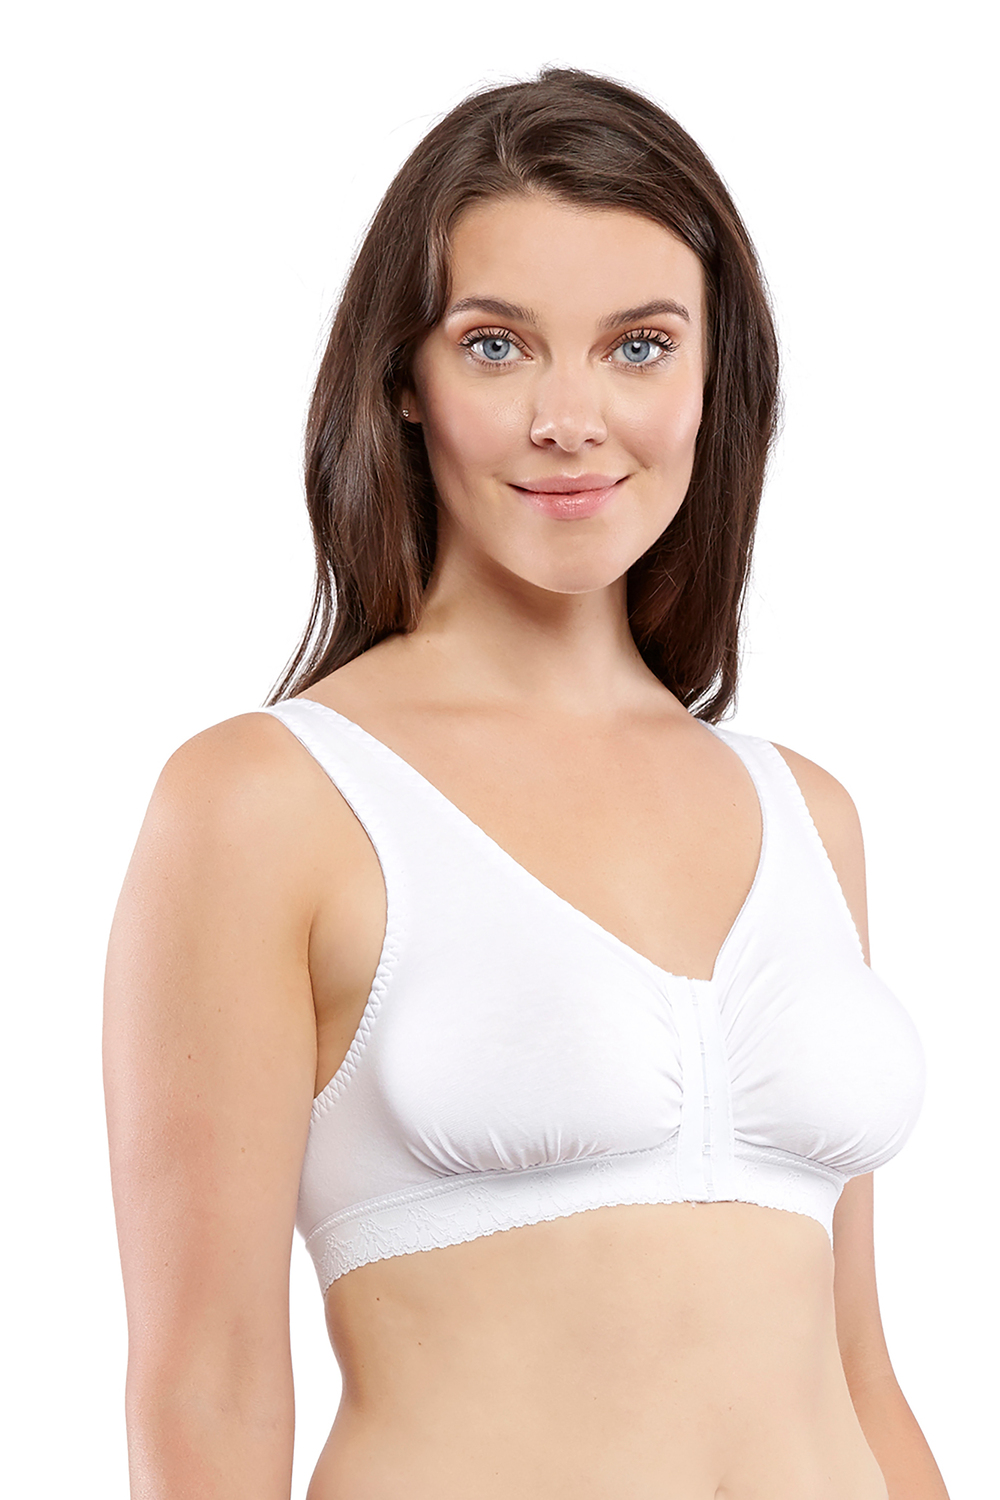 Carole Martin - Cotton Comfort bra, white, 36